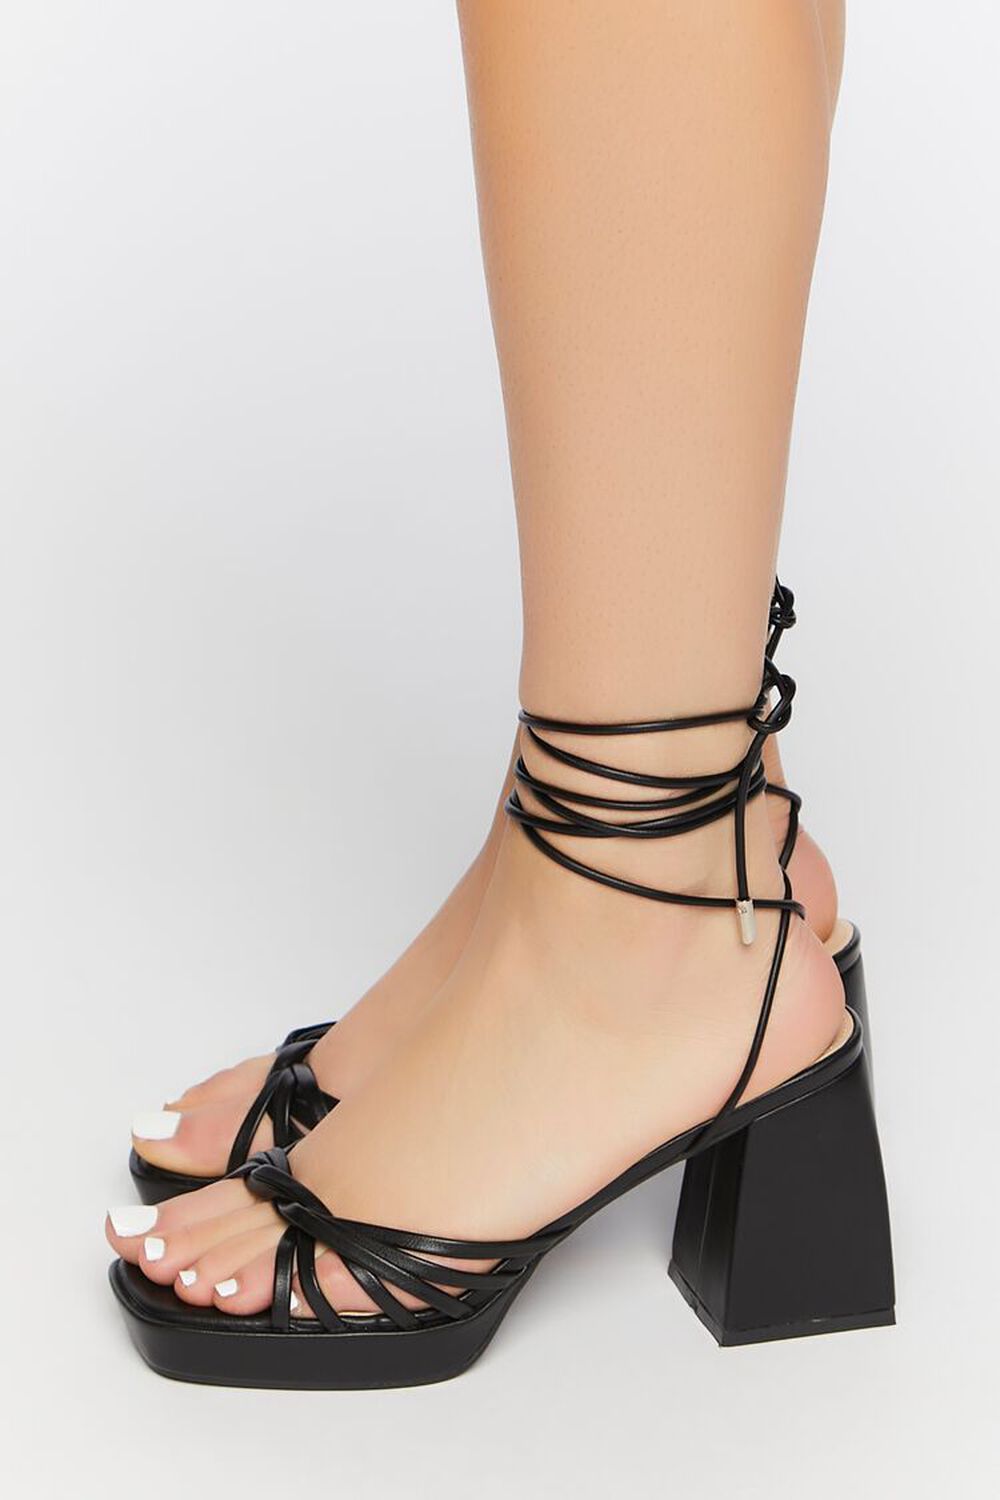 BLACK Strappy Platform Lace-Up Heels, image 2